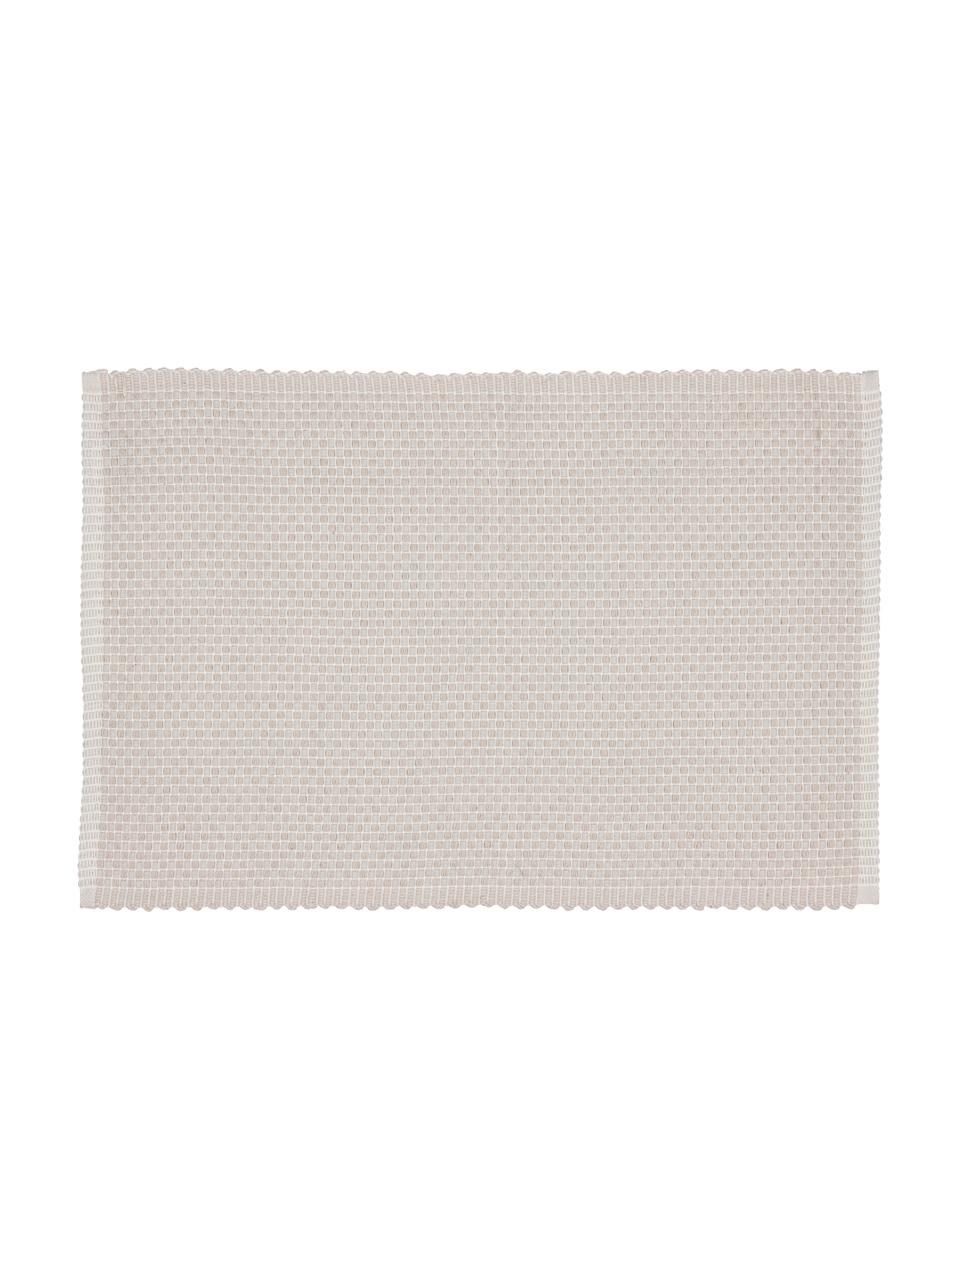 Podkładka z bawełny Grain, 4 szt., 100% bawełna, Kremowobiały, S 33 x D 49 cm